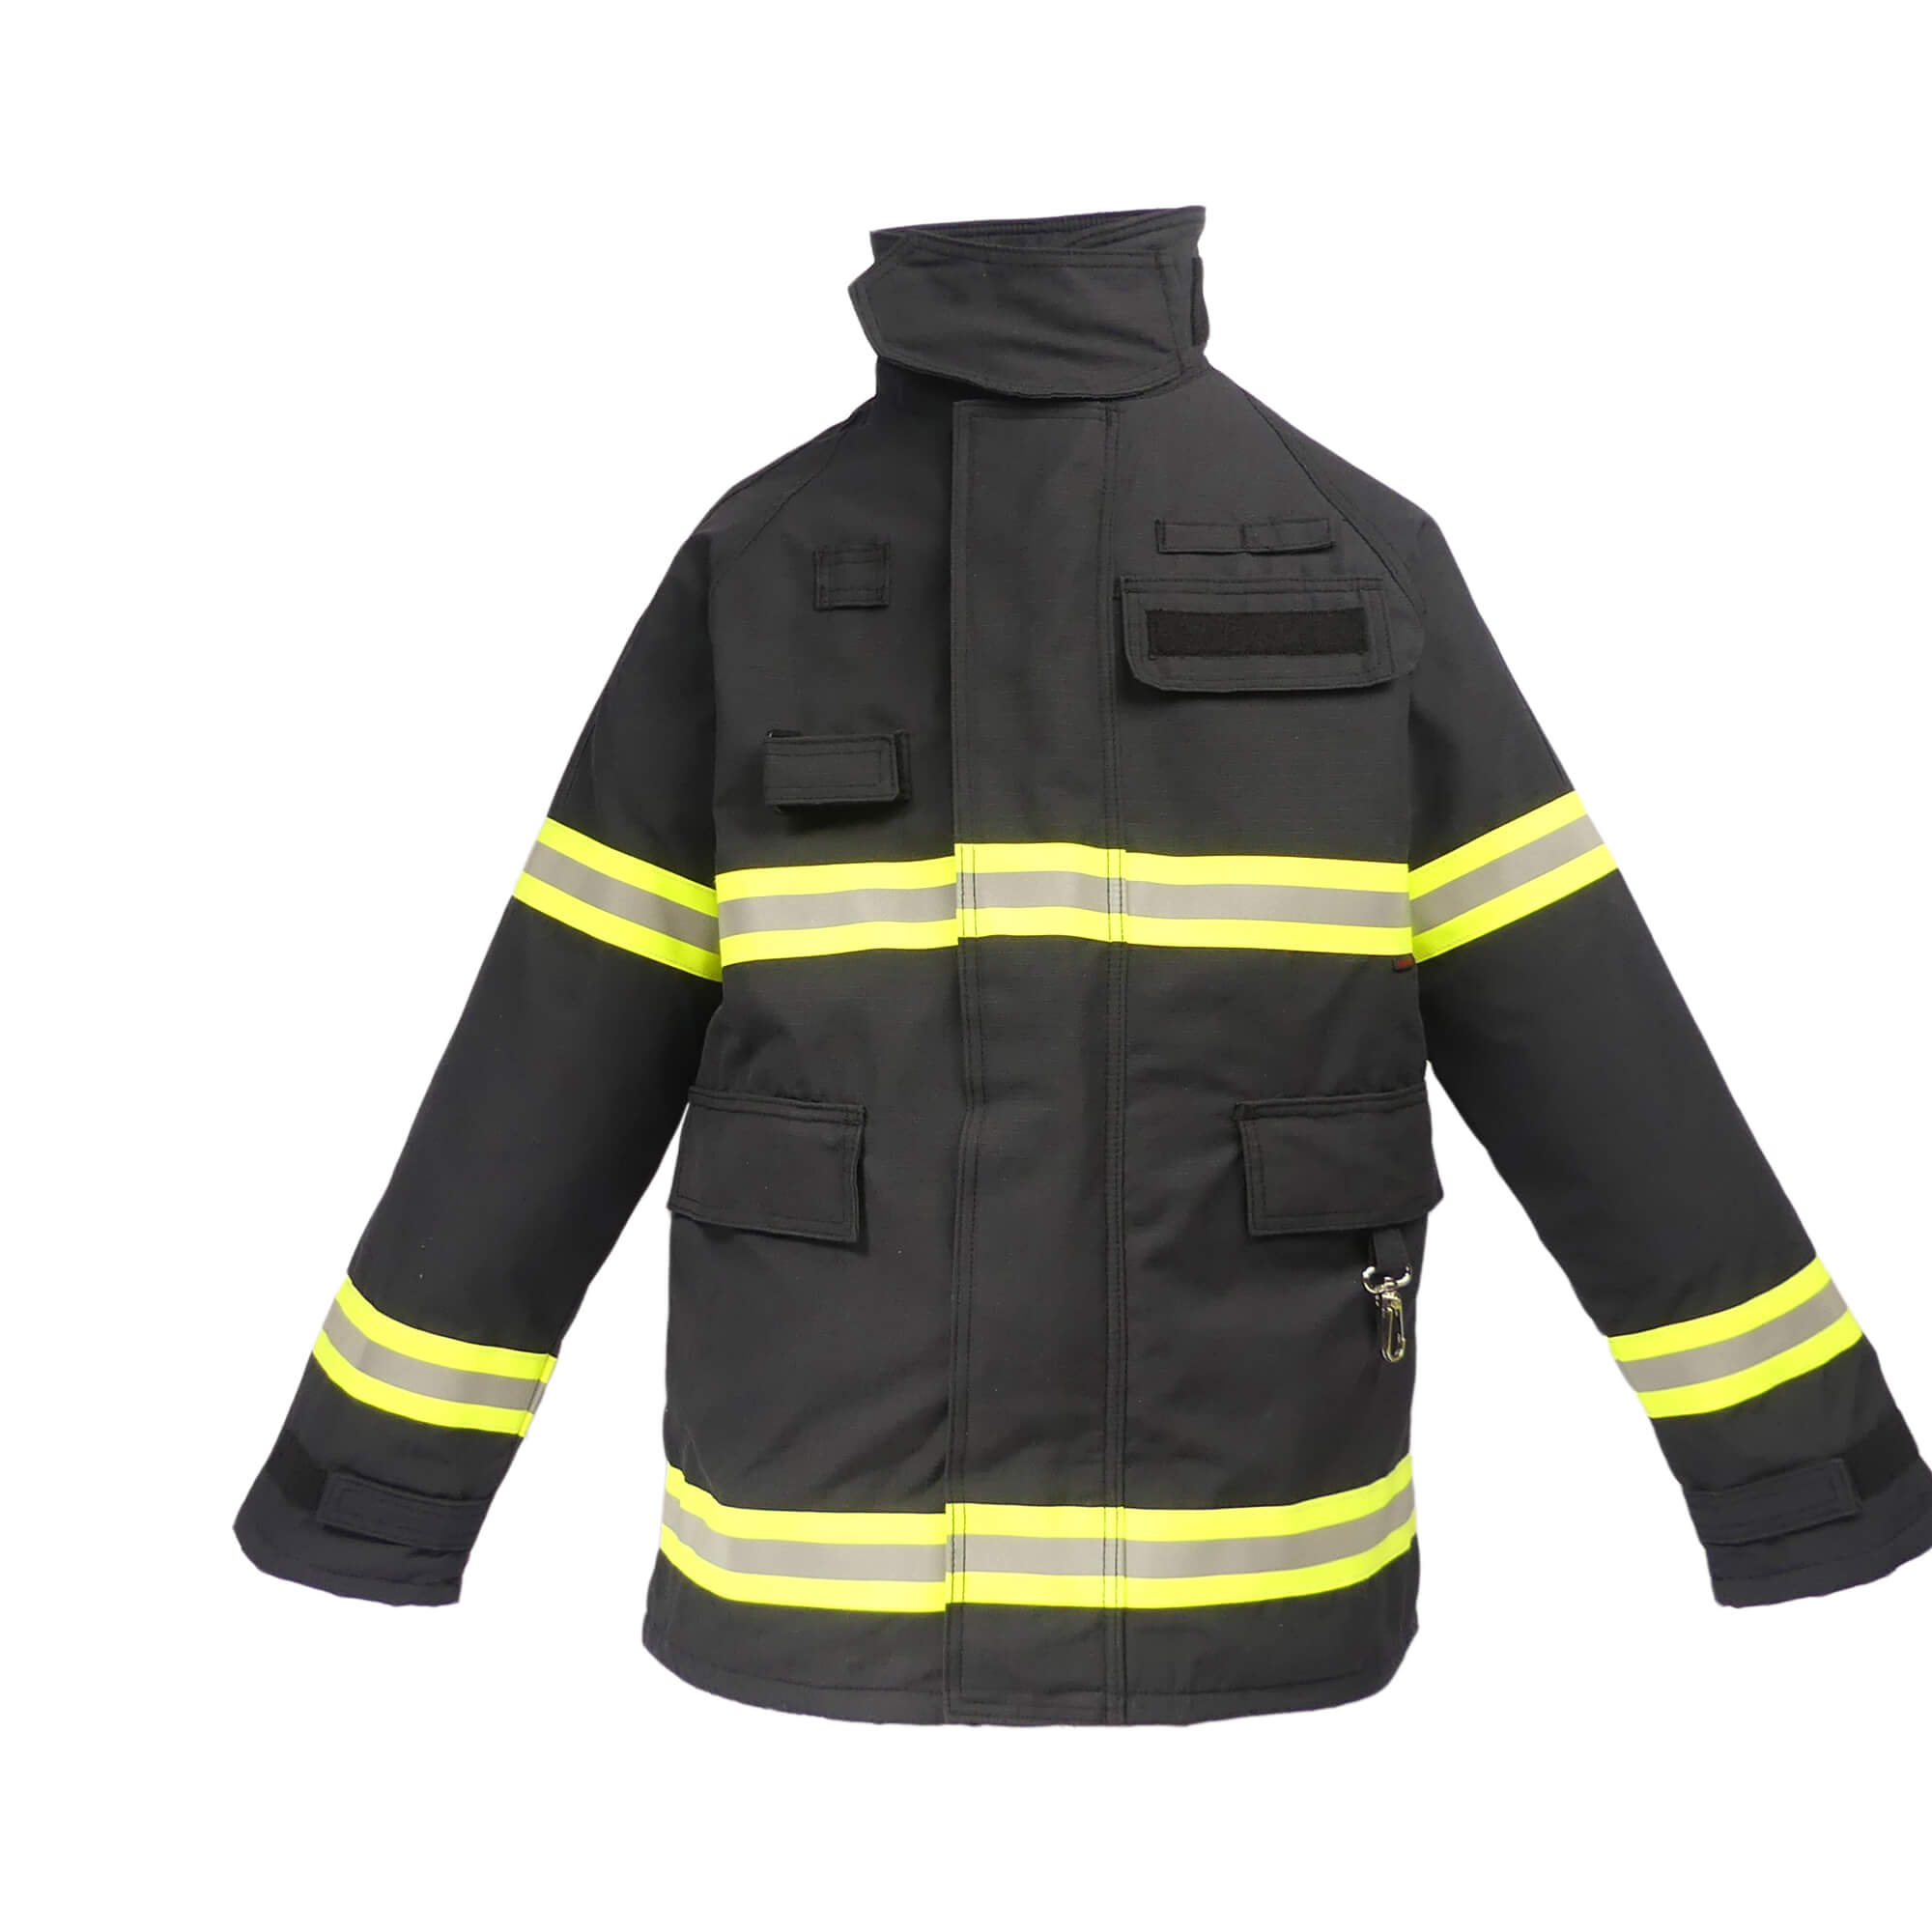 Interventno vatrogasno odijelo Fyrpro 730®